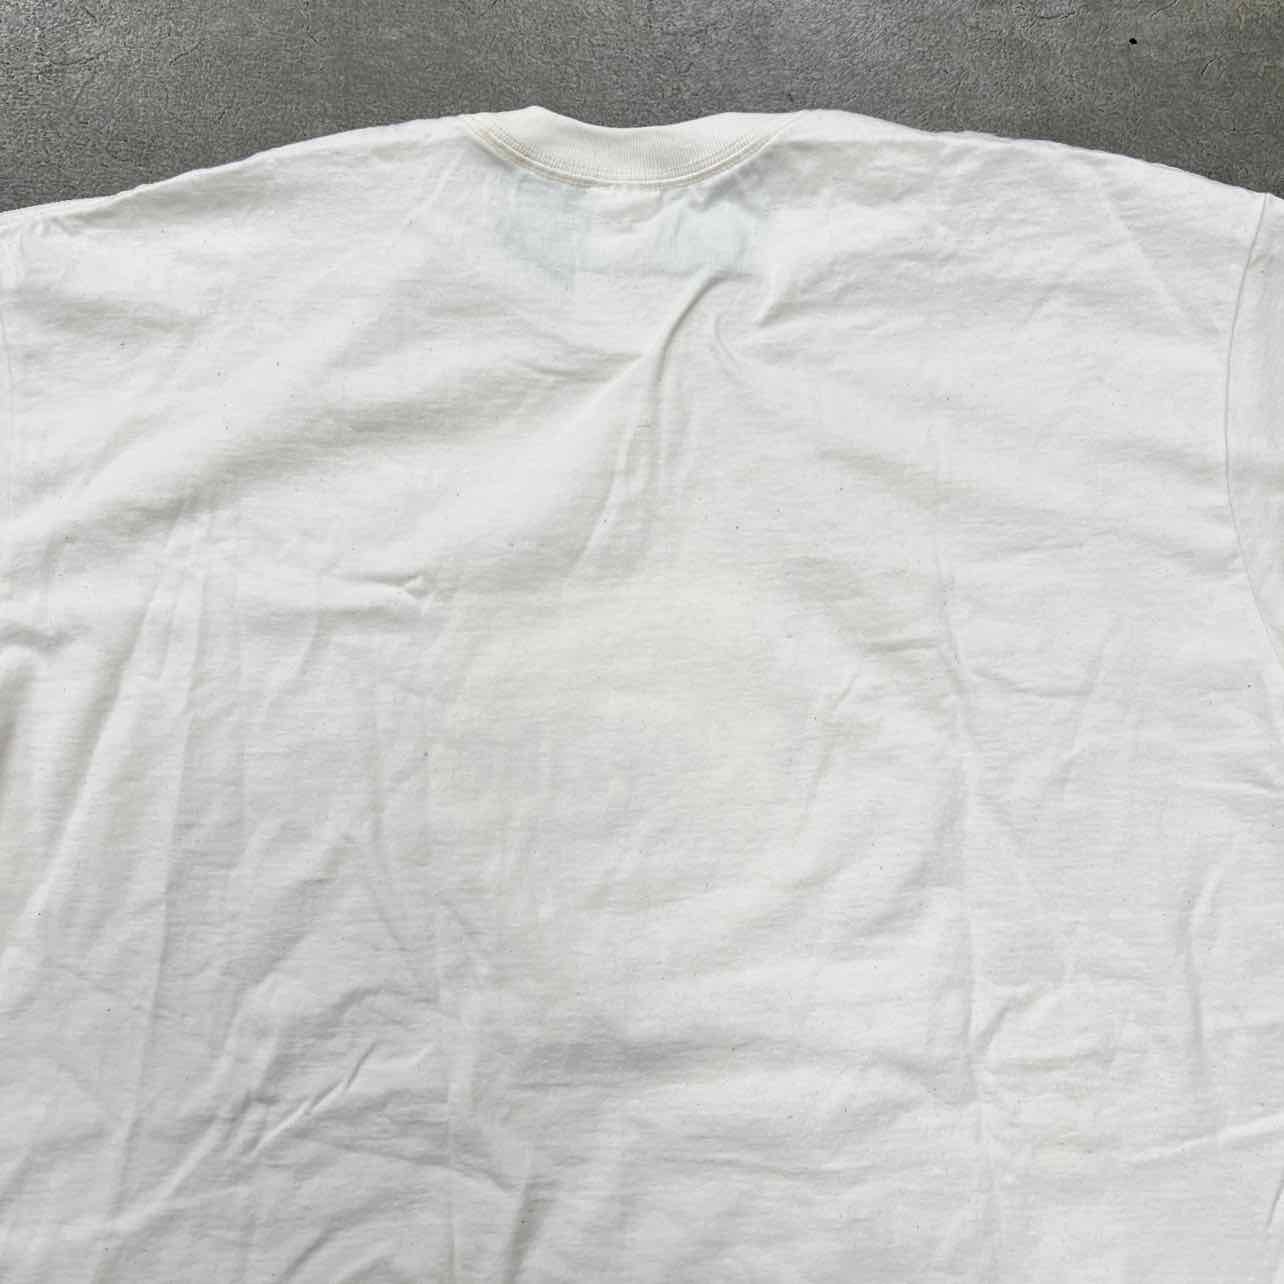 Supreme T-Shirt "NATURAL" Natural Used Size 2XL